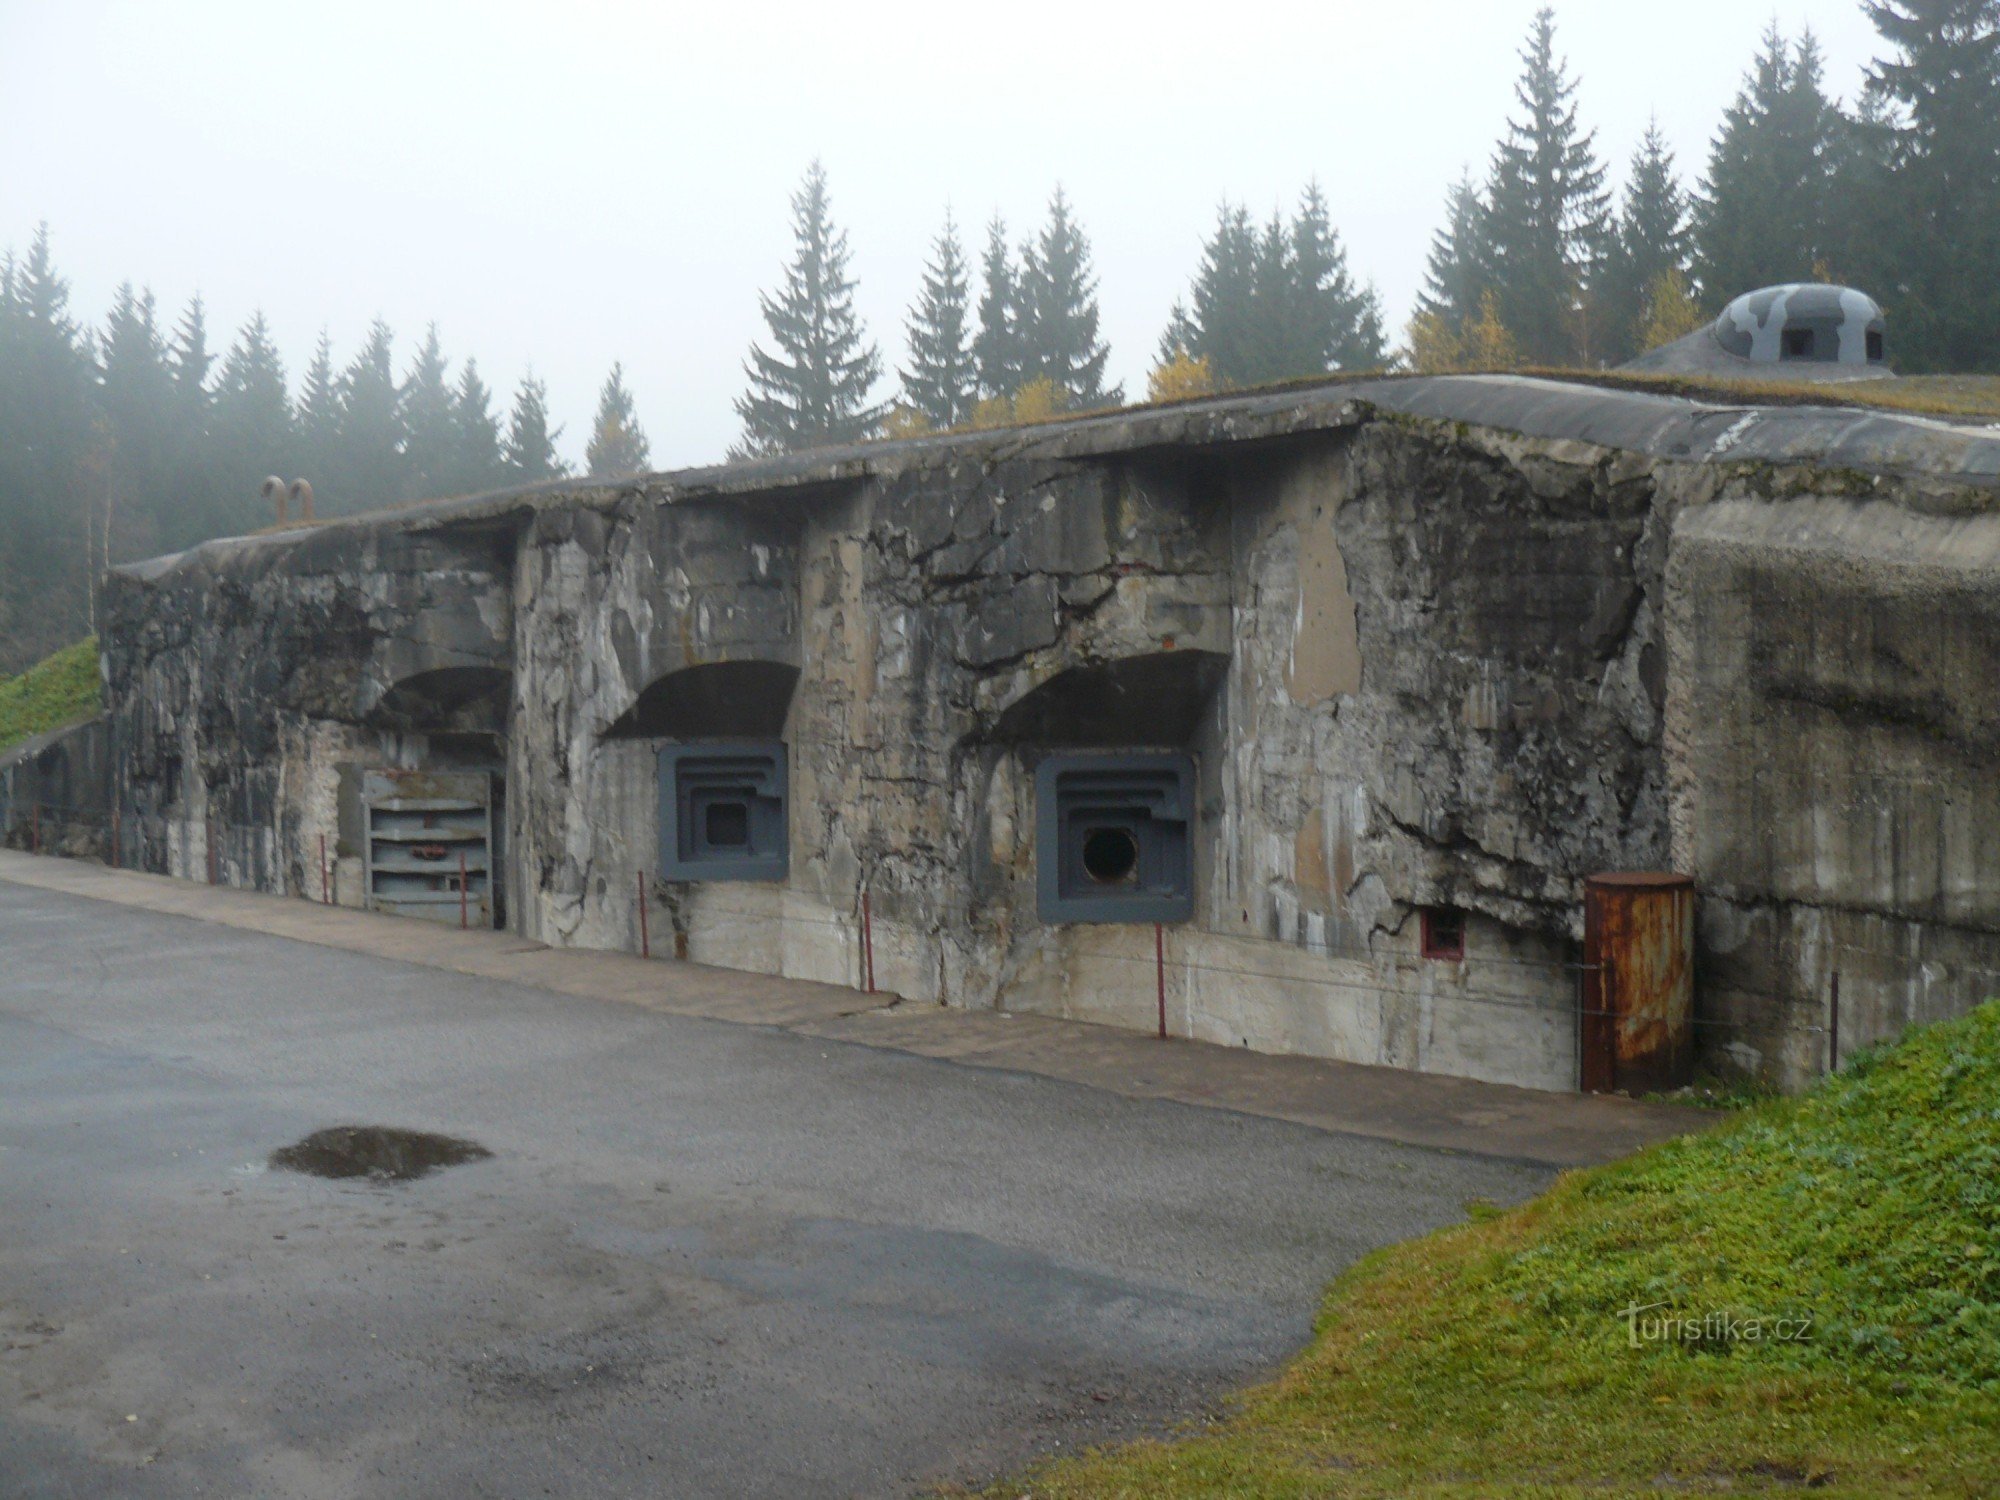 Blockhaus d'artillerie où devaient se trouver les trois obusiers de 100 mm